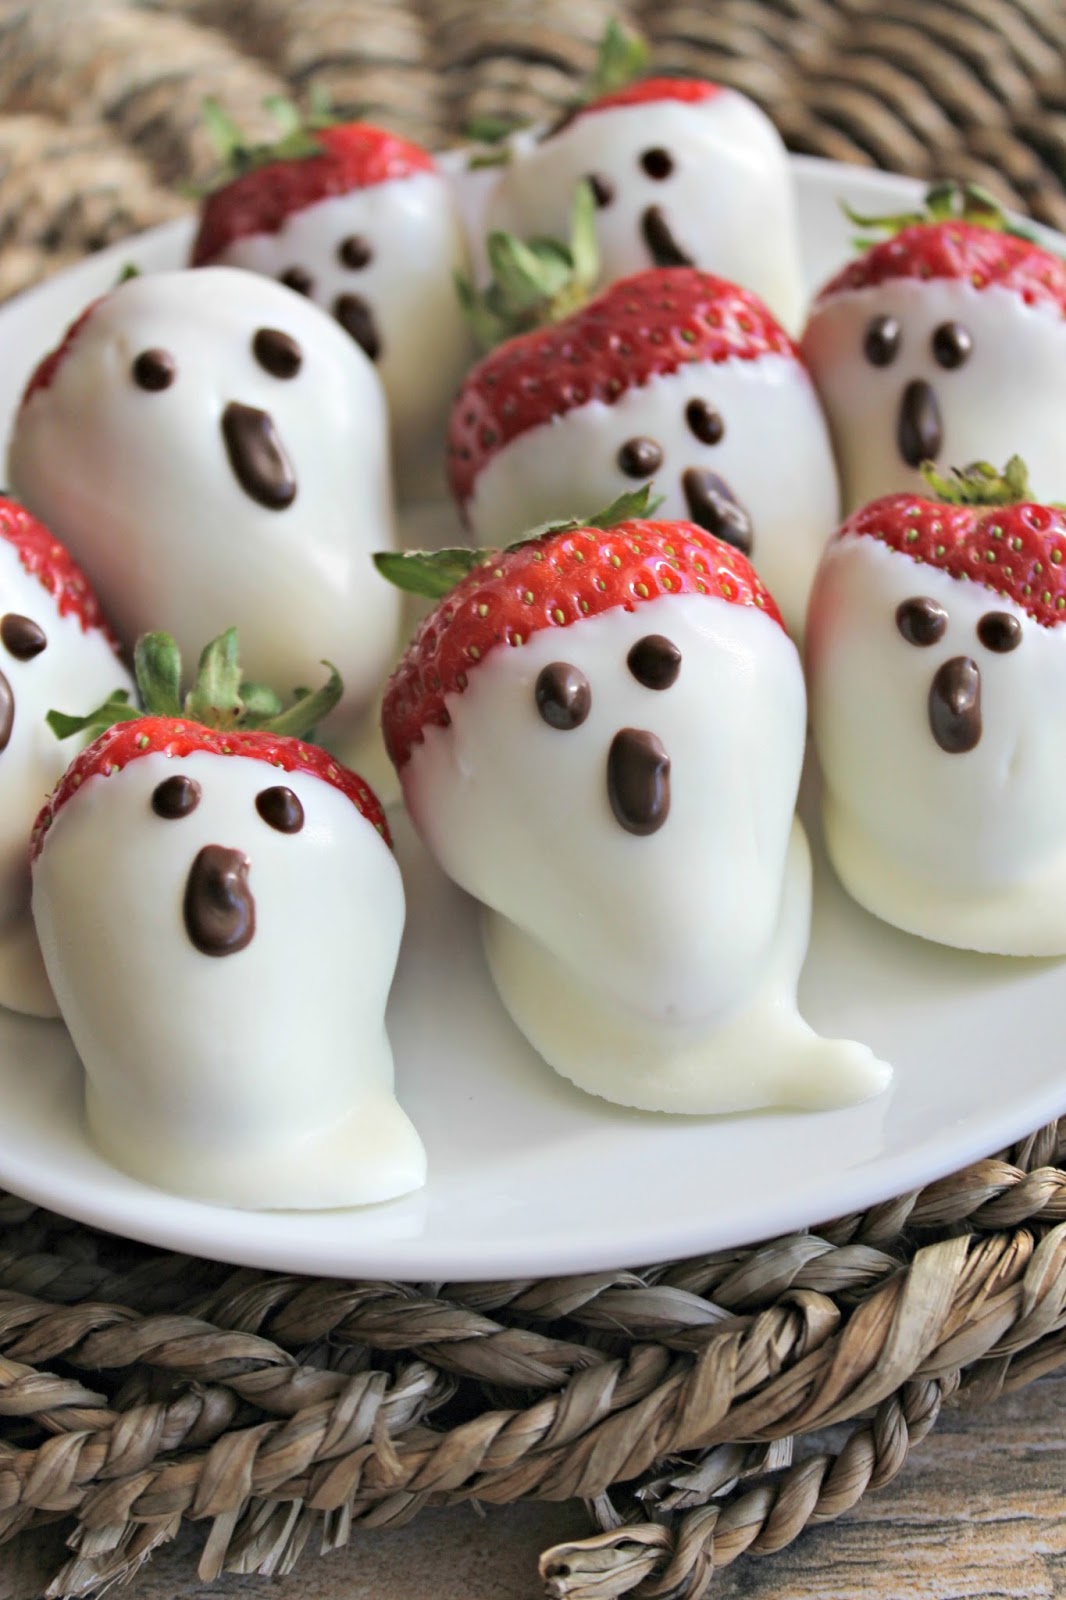 Halloween Chocolate-Covered Strawberries Recipe